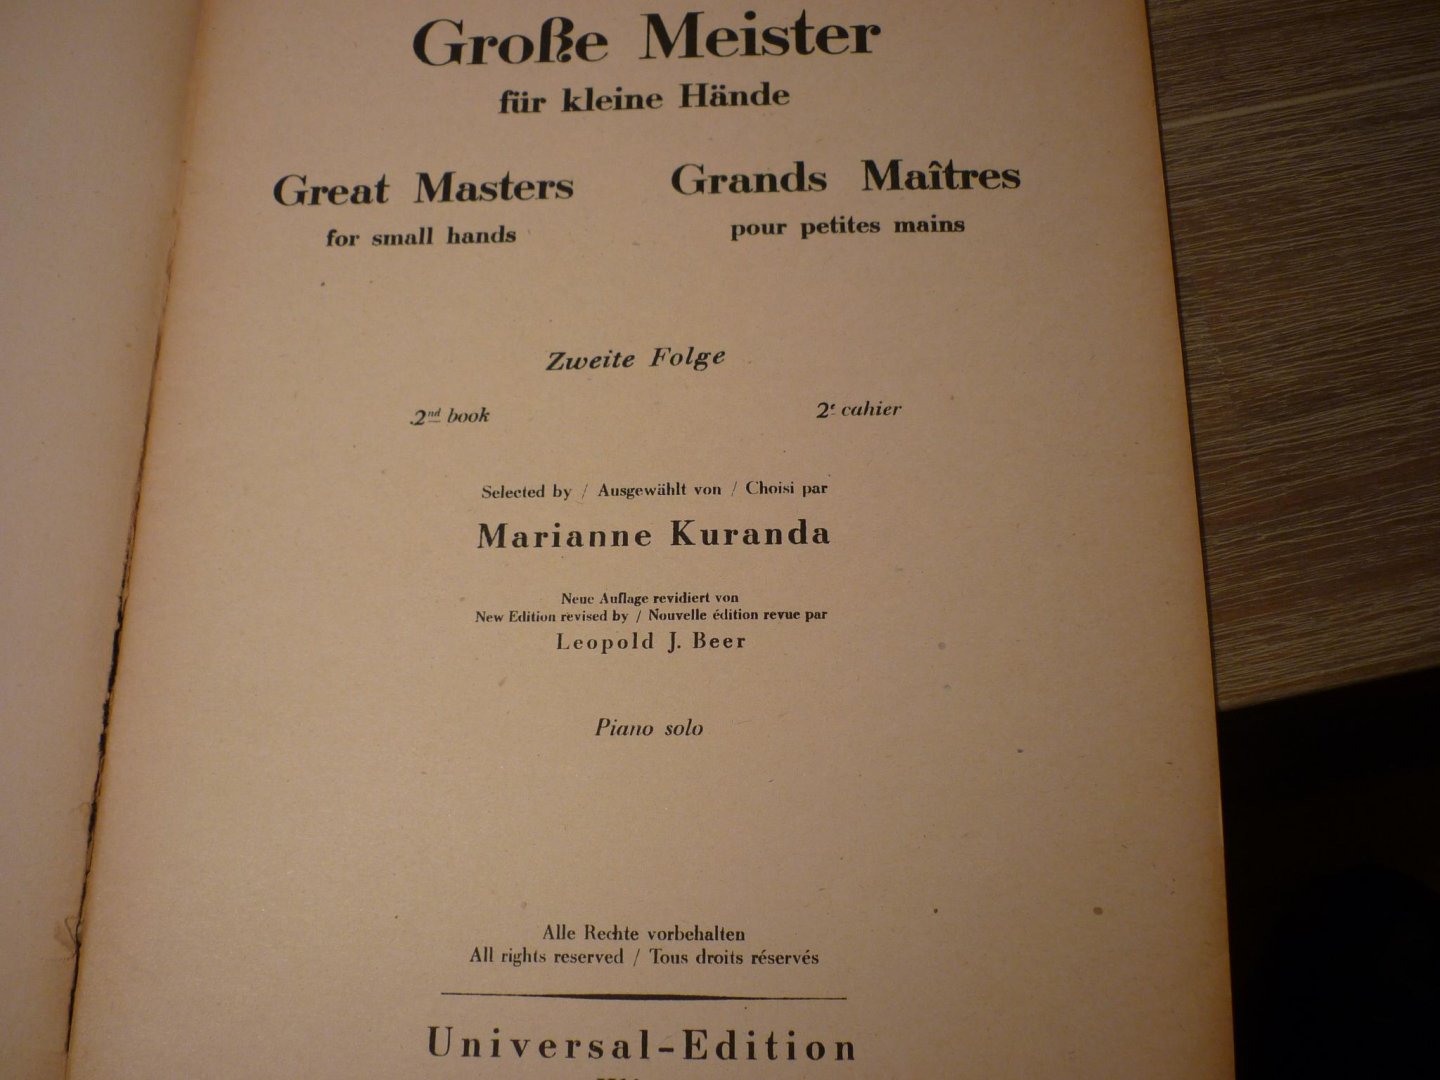 Div. Componisten - Grosse Meister fur kleine Hande; herausgegeben von Leopold J. Beer; piano zu 2 handen